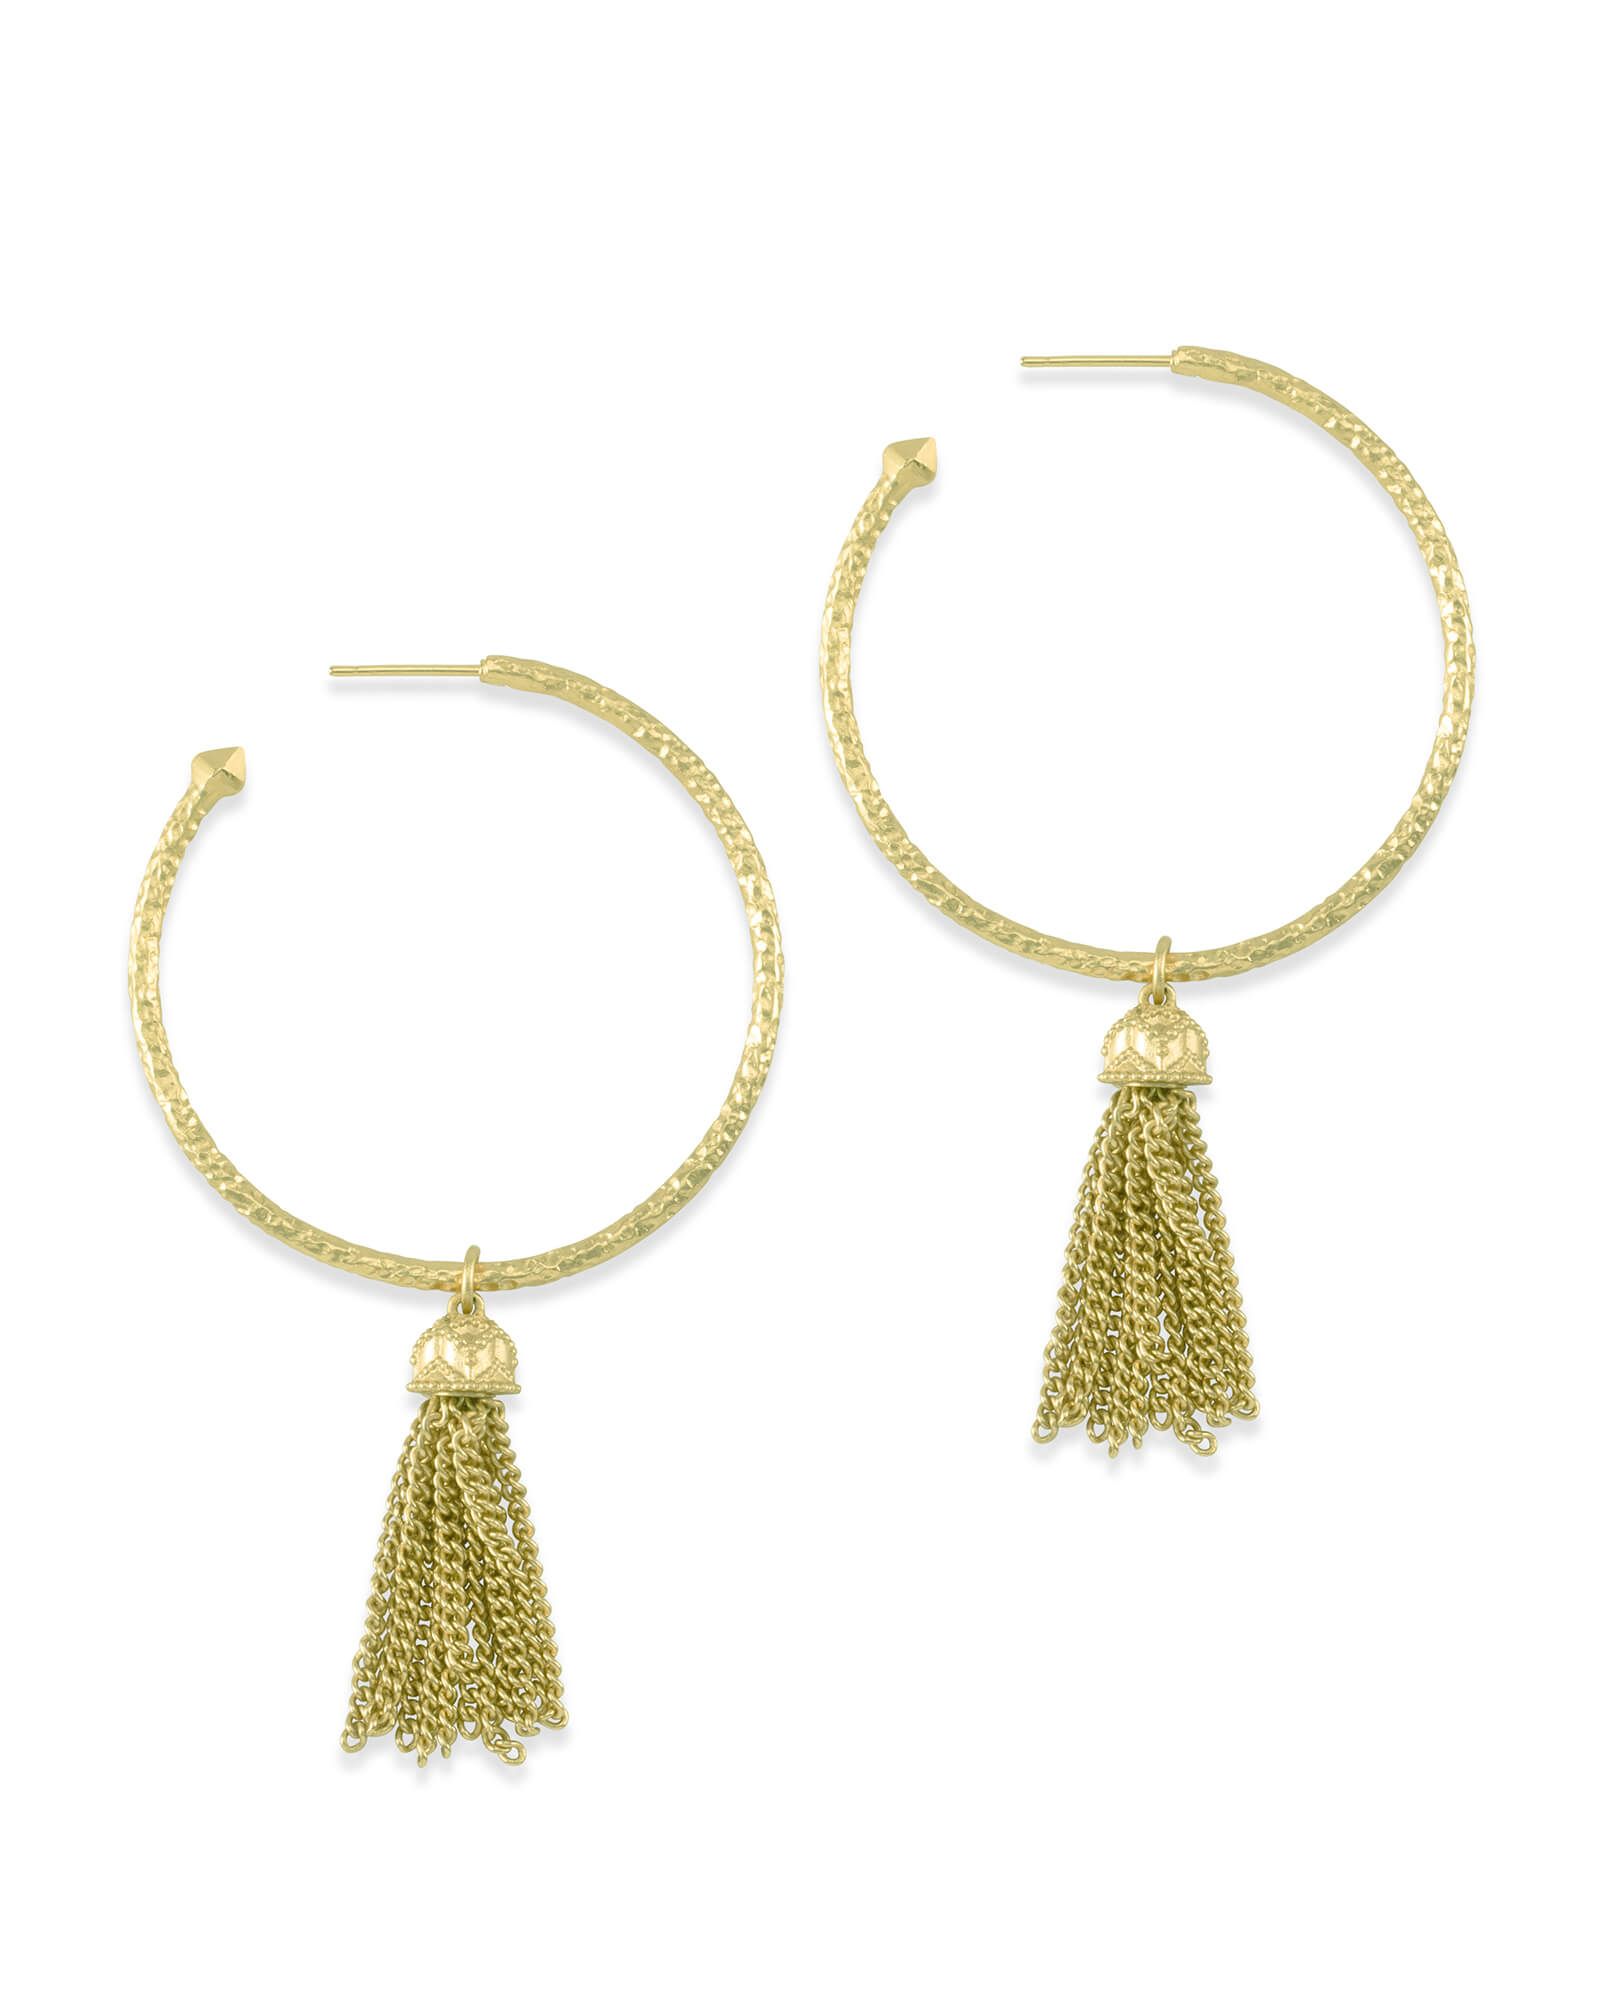 Tassel Charm Hoop Earrings Set in Gold | Kendra Scott